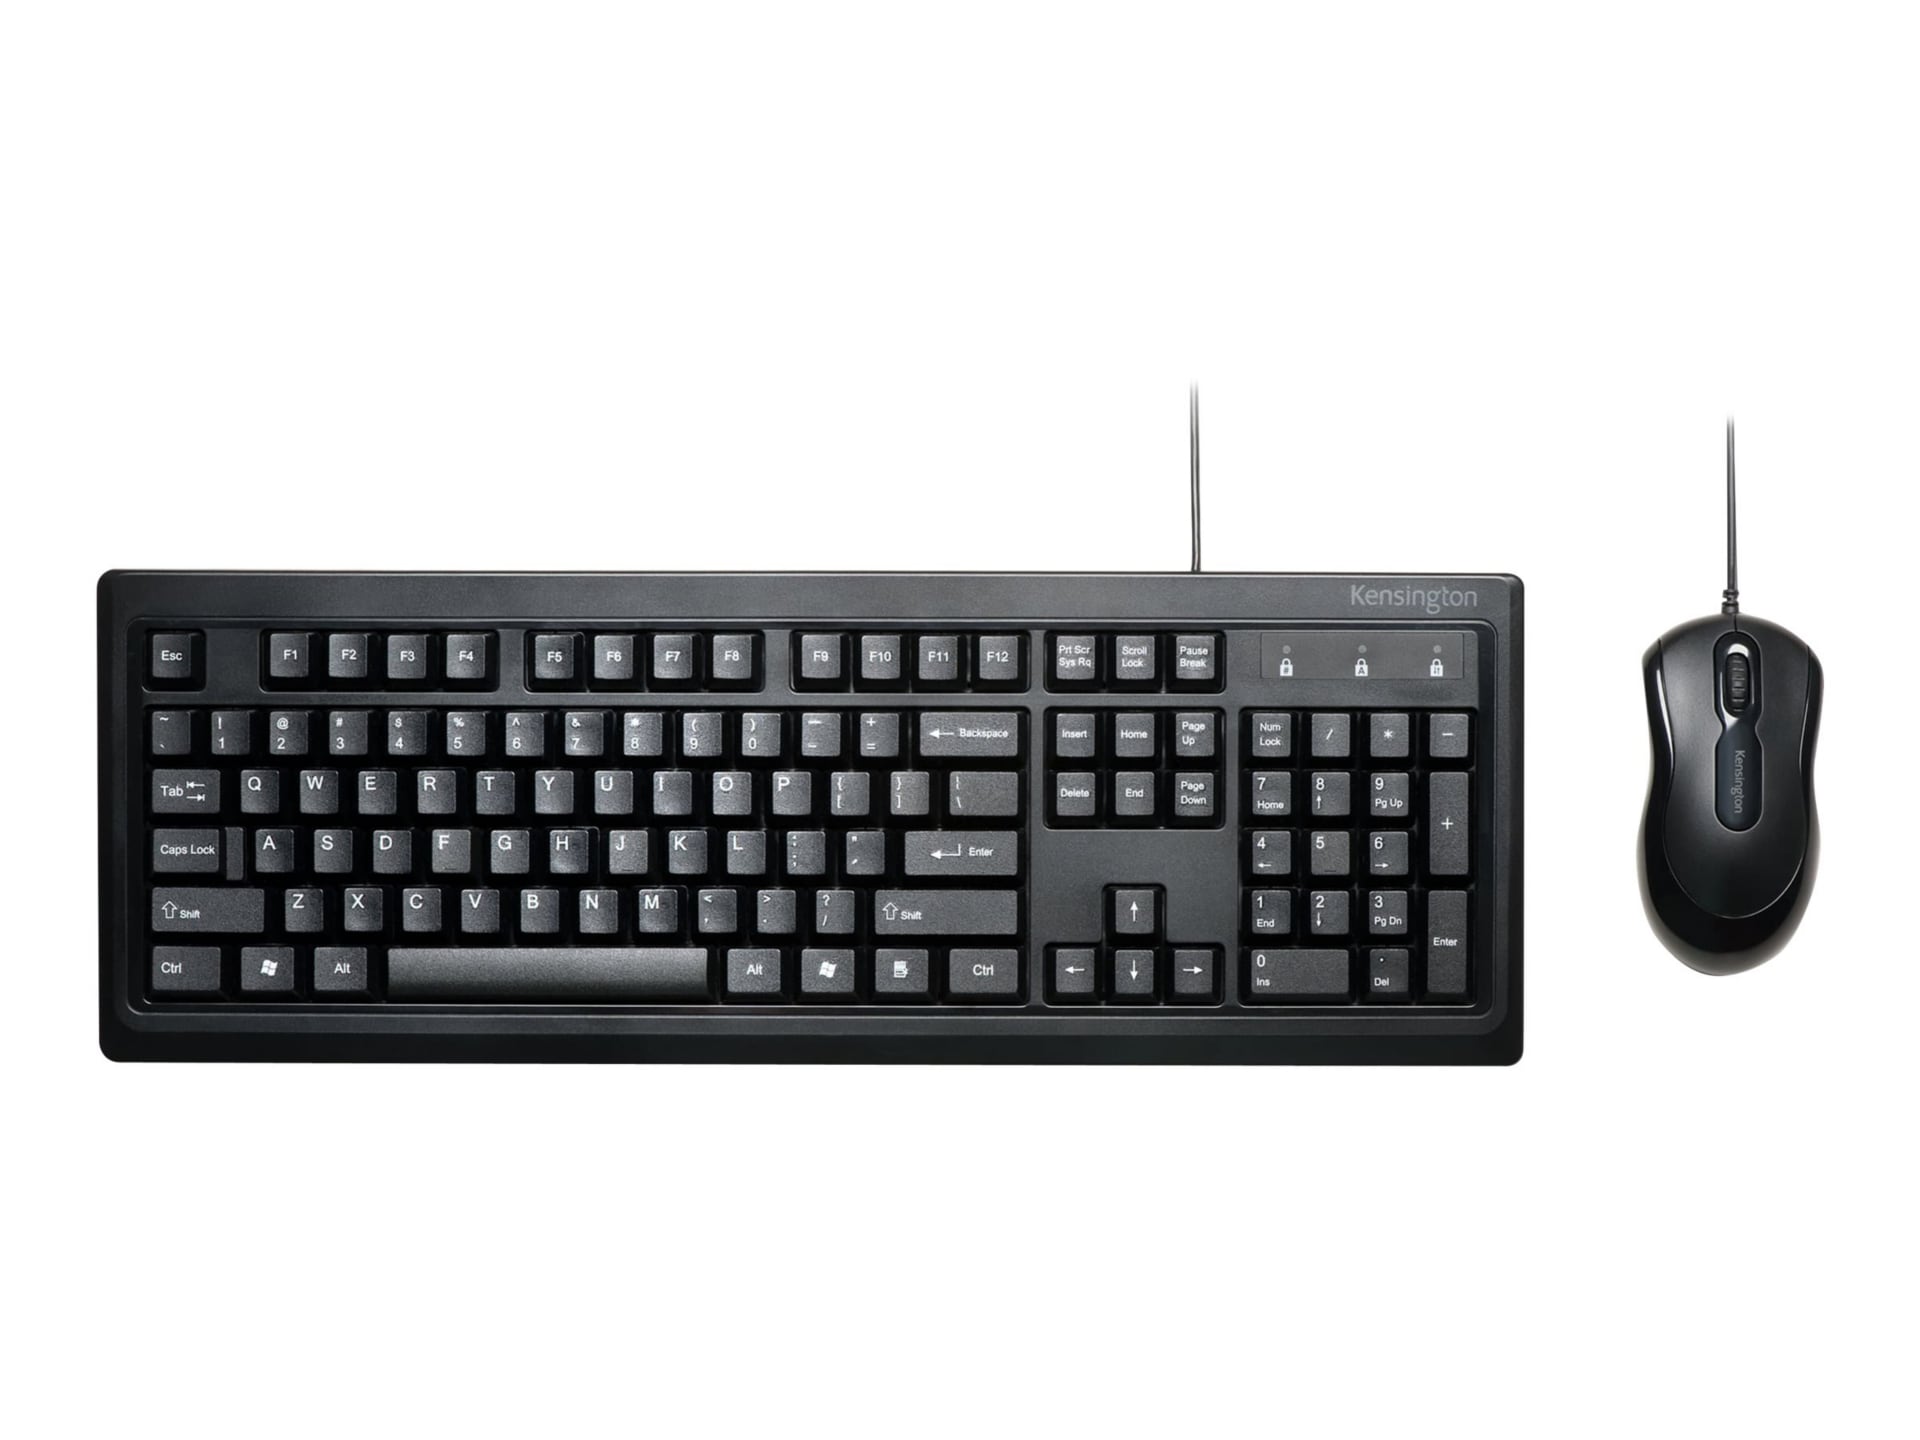 Kensington Keyboard for Life Desktop Set - keyboard and mouse set - black Input Device